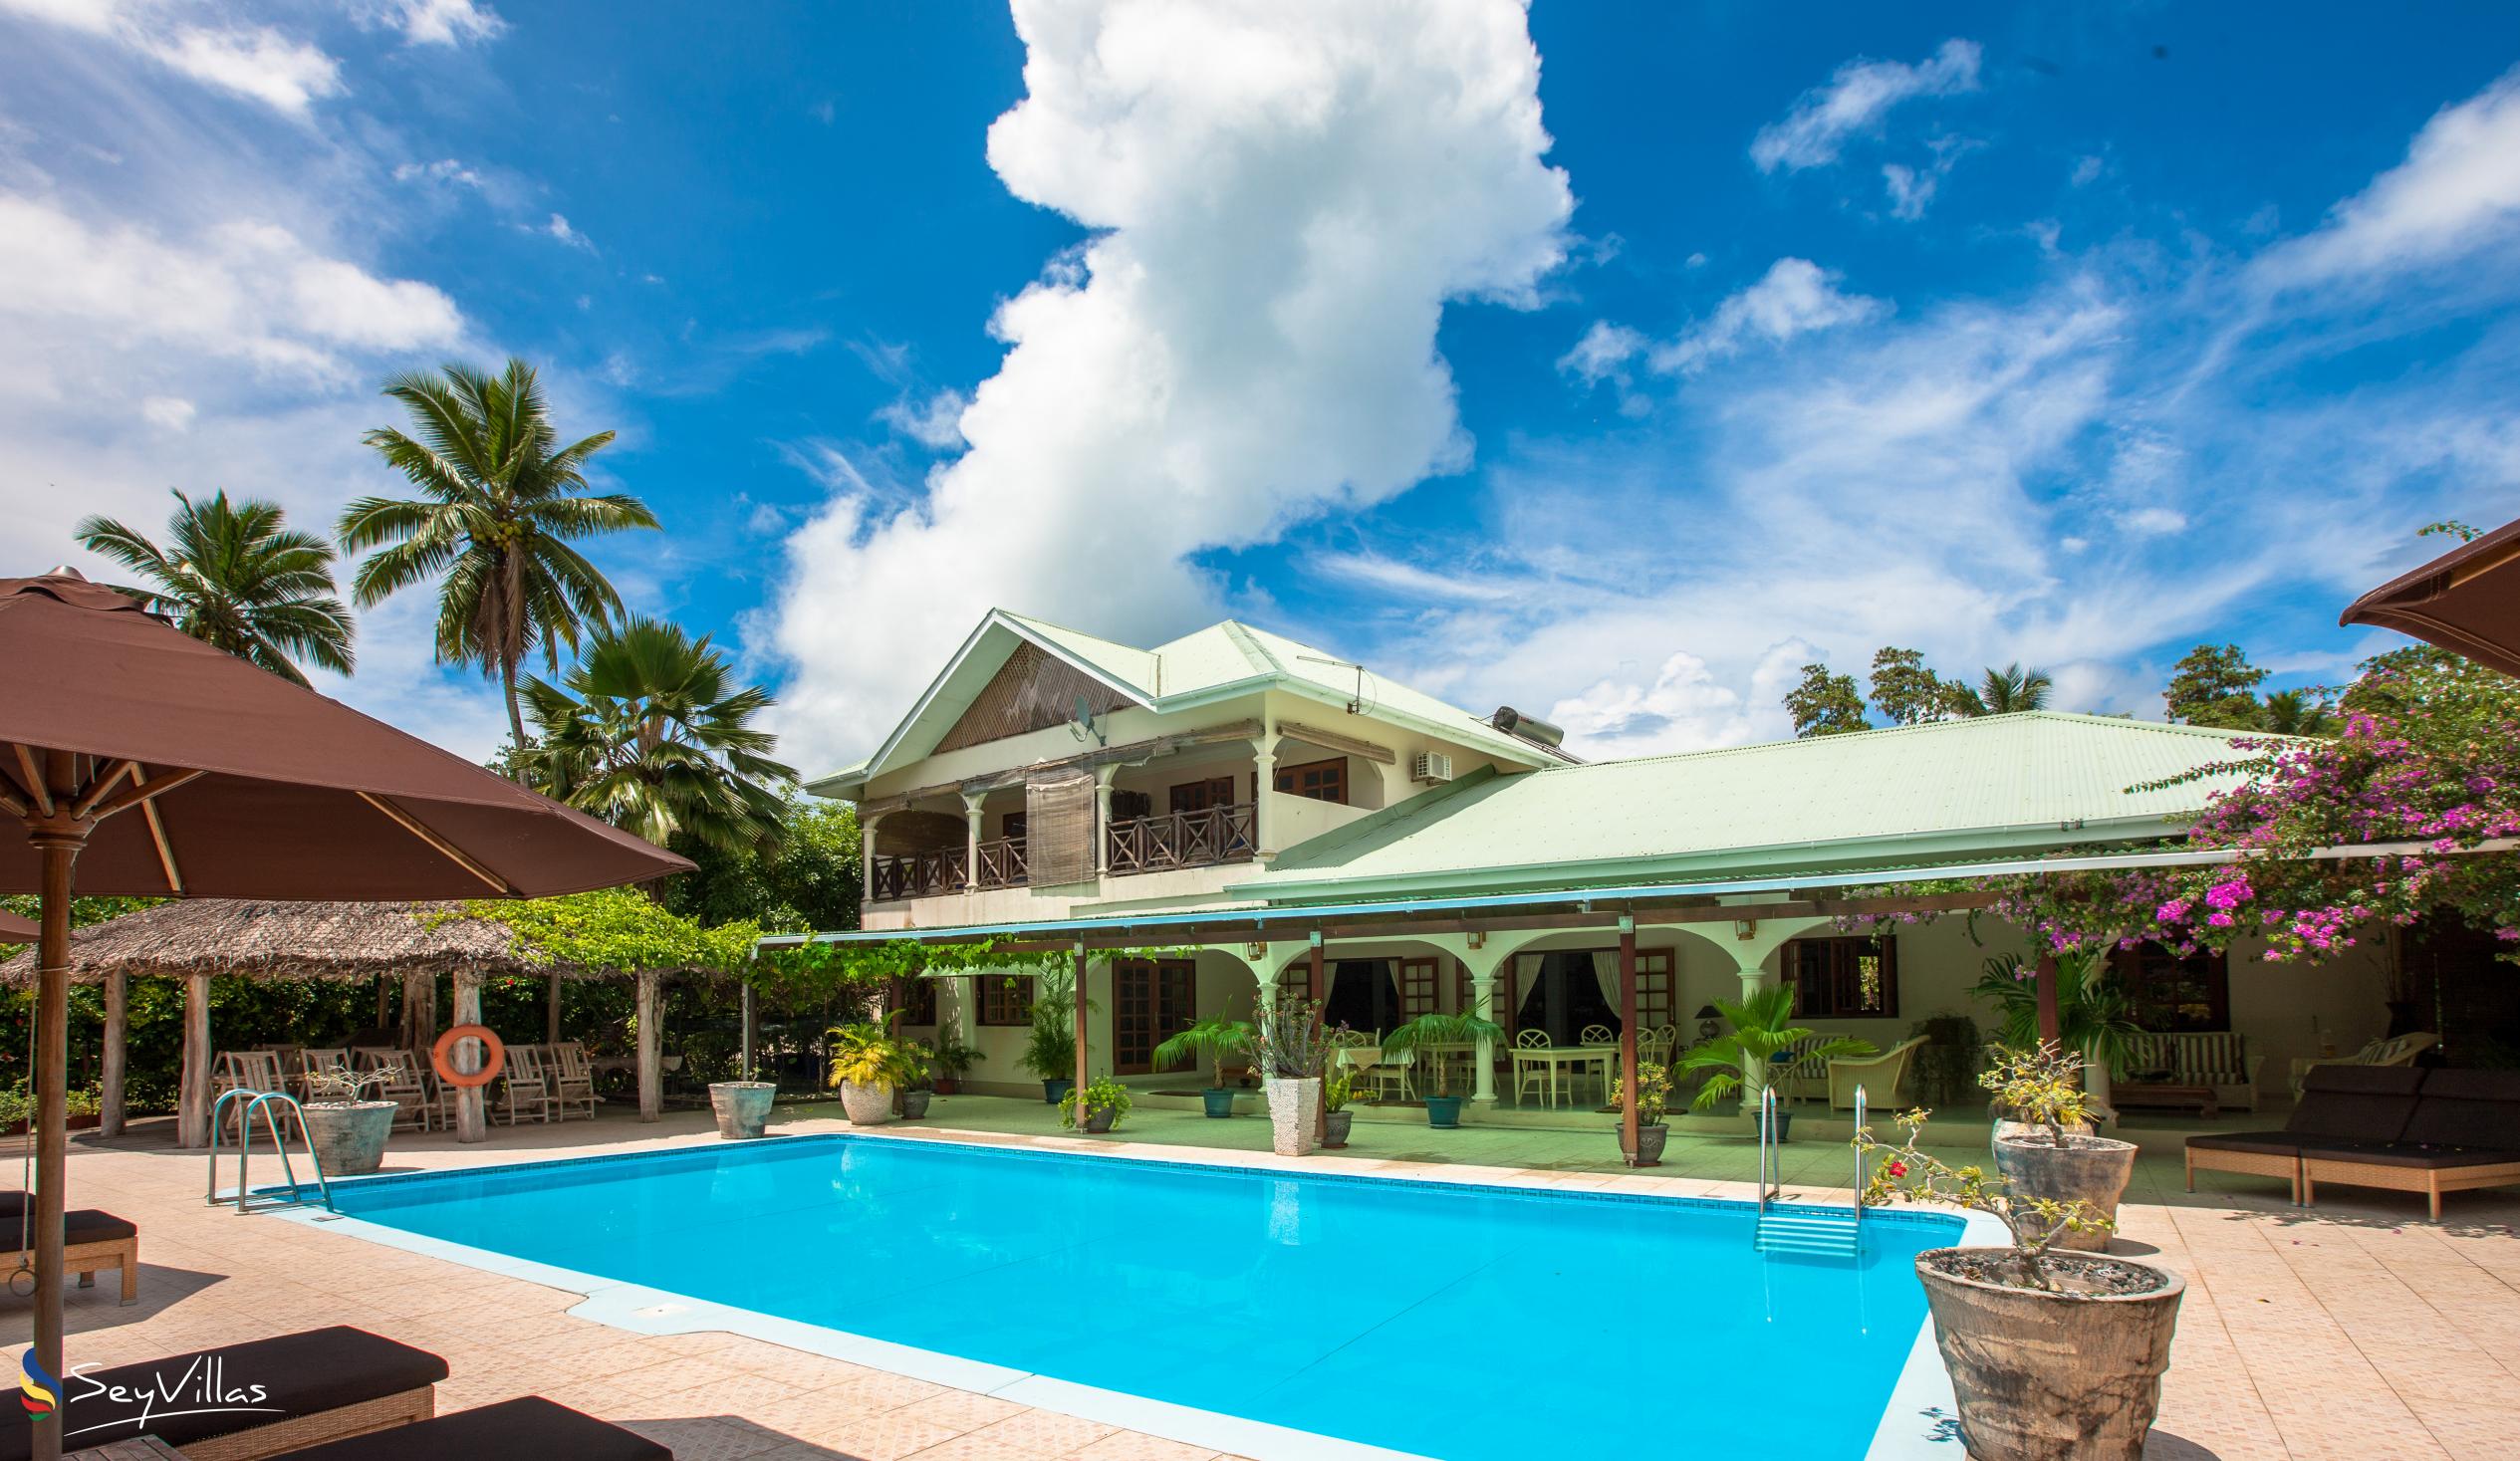 Foto 3: Villa de Cerf - Aussenbereich - Cerf Island (Seychellen)